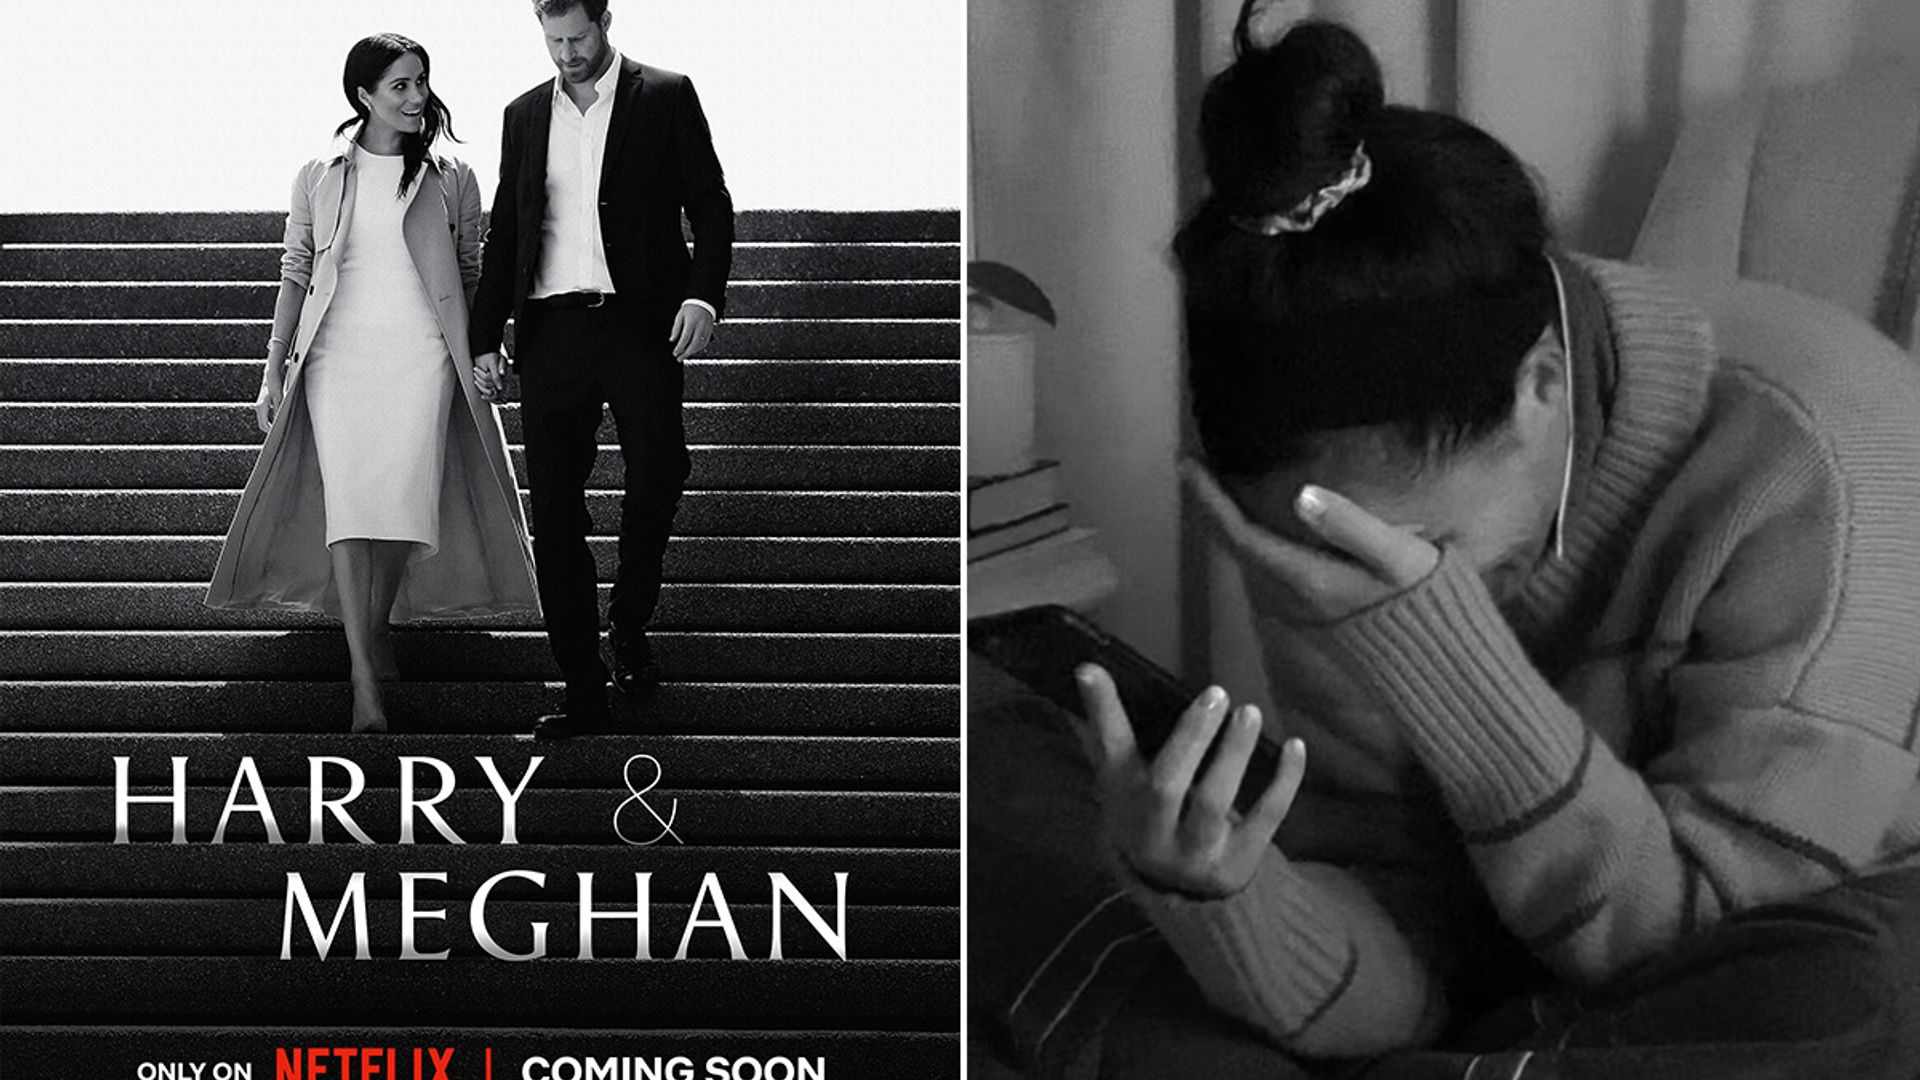 Meghan Markle breaks down in tears in explosive trailer for Netflix